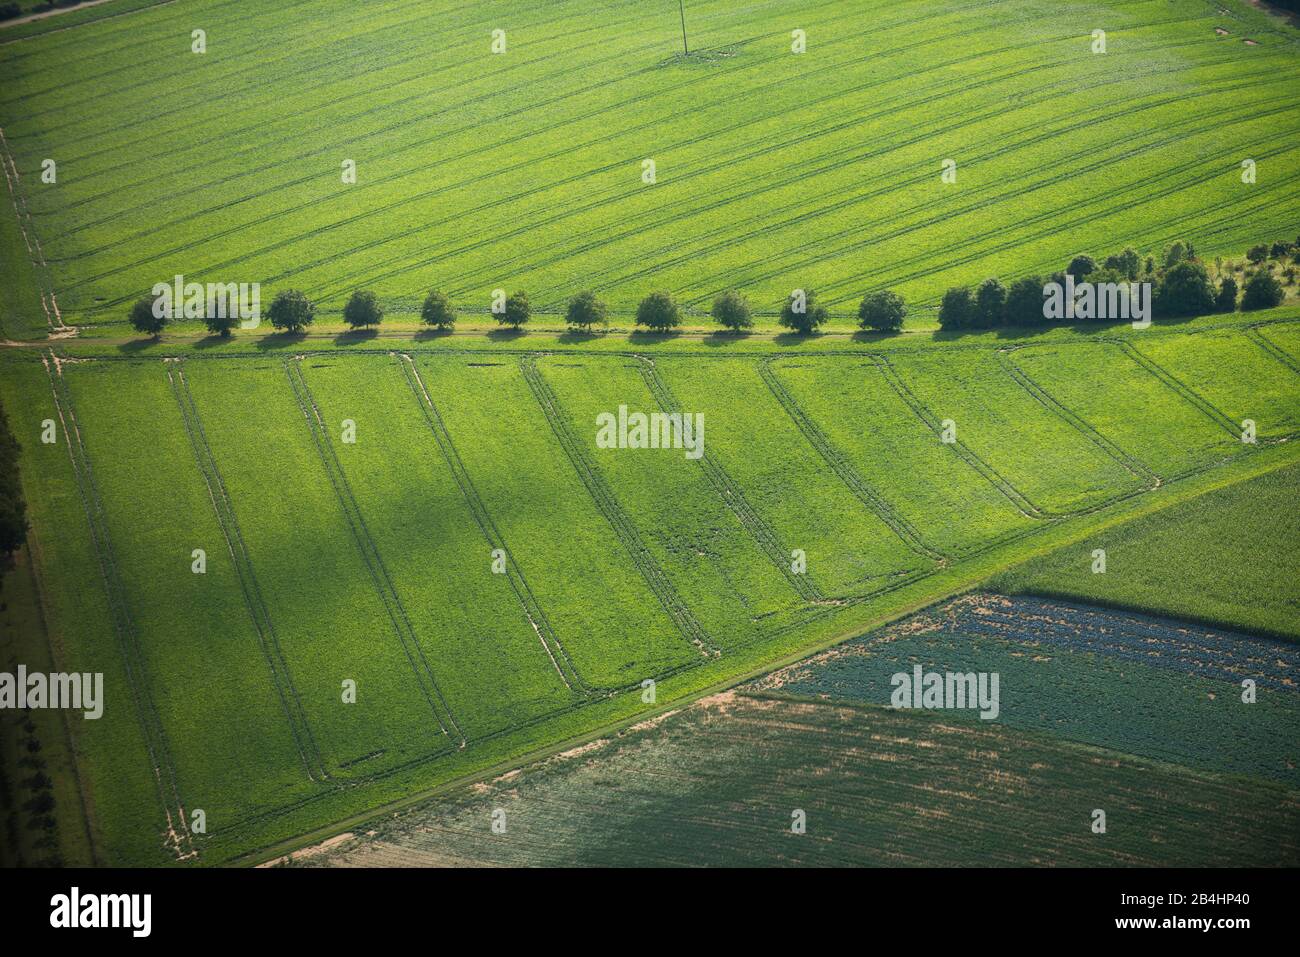 Luftaufnahme von landwirtschaftlich genutzer Grünfläche und Wirtschaftweg mit Baumallee Stock Photo